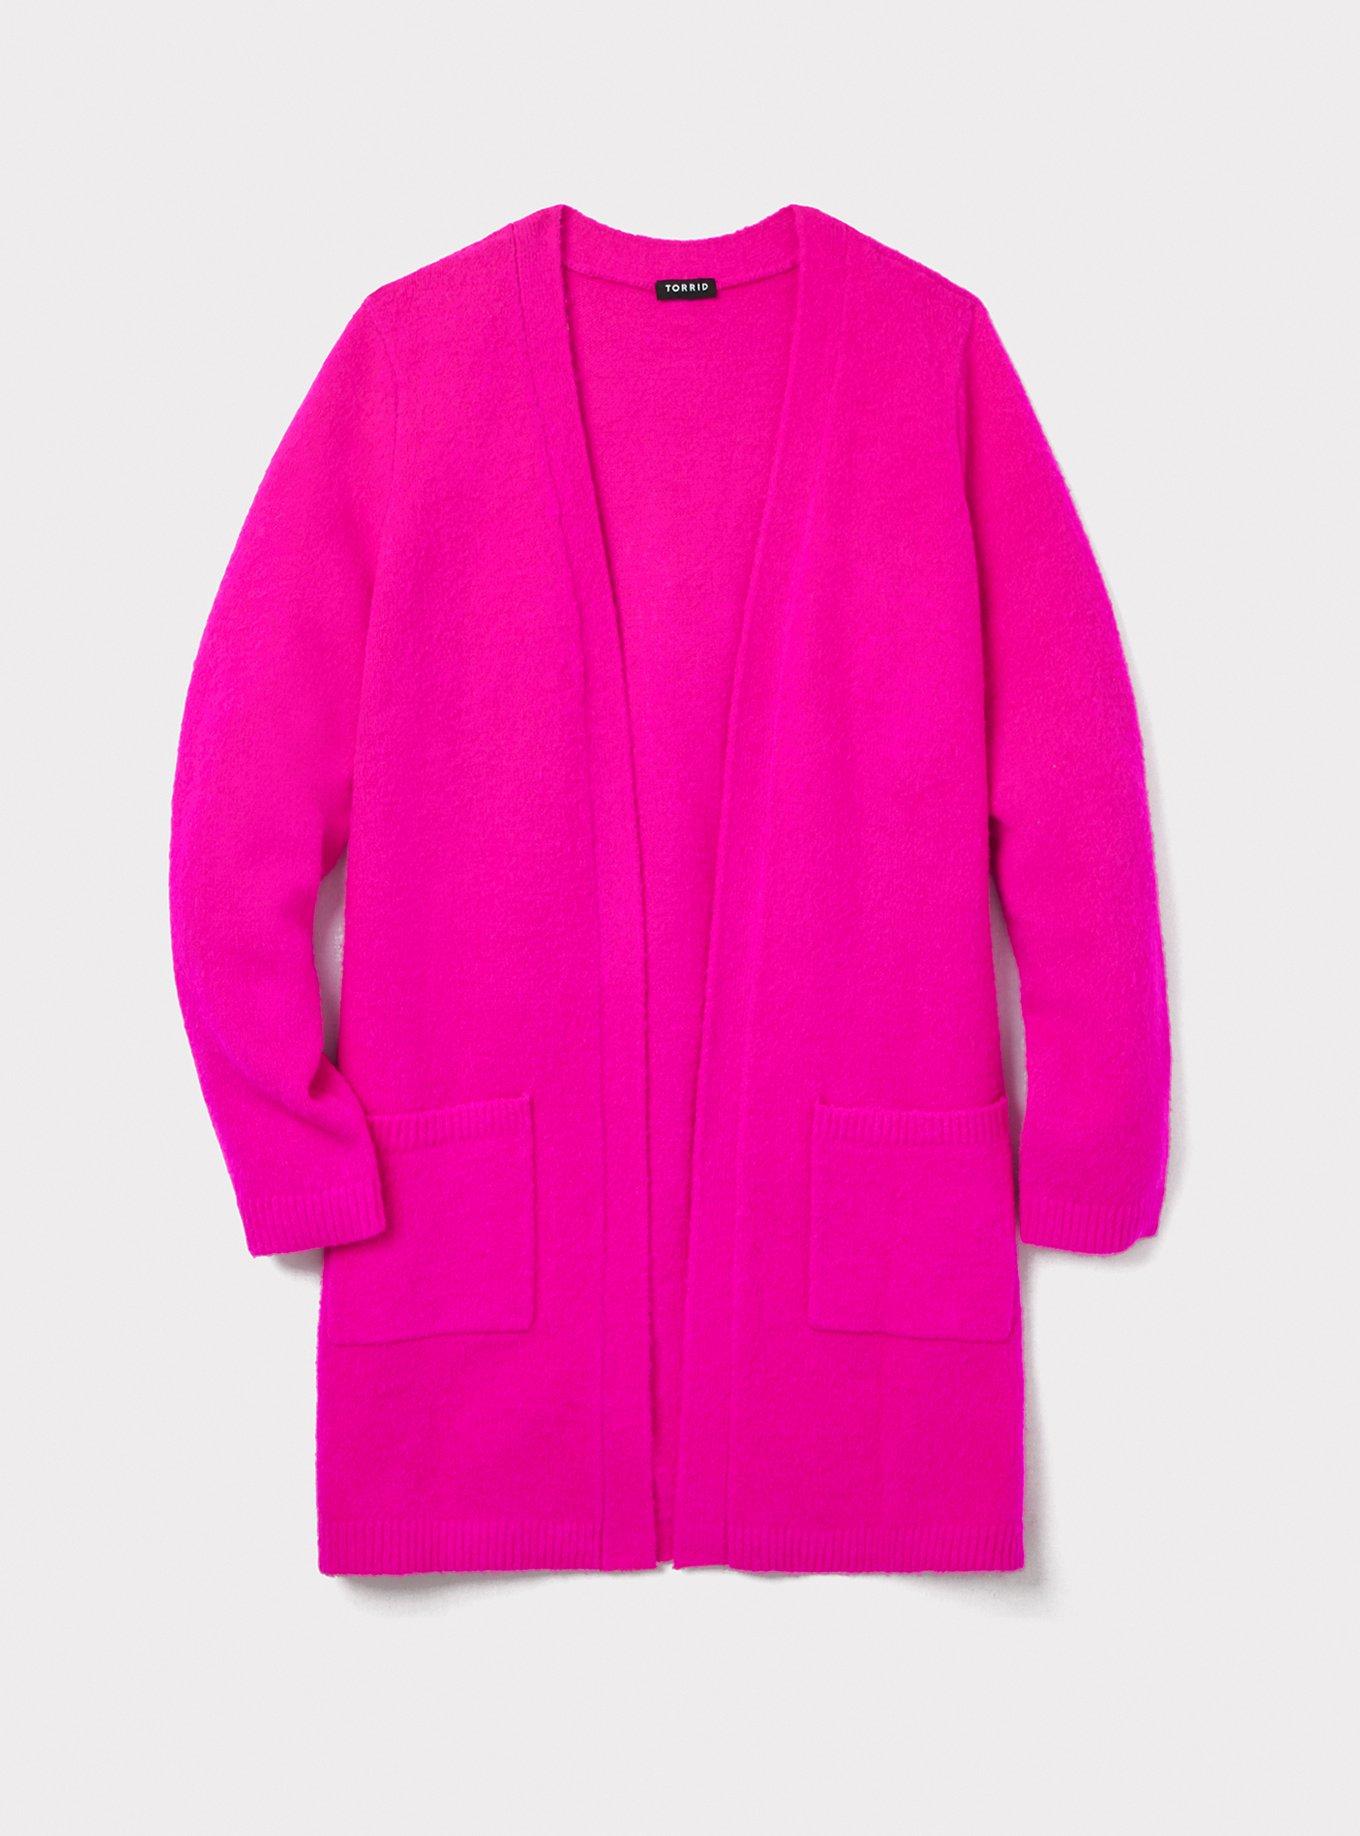 Plus Size - Cardigan Open Front Longline Sweater - Torrid